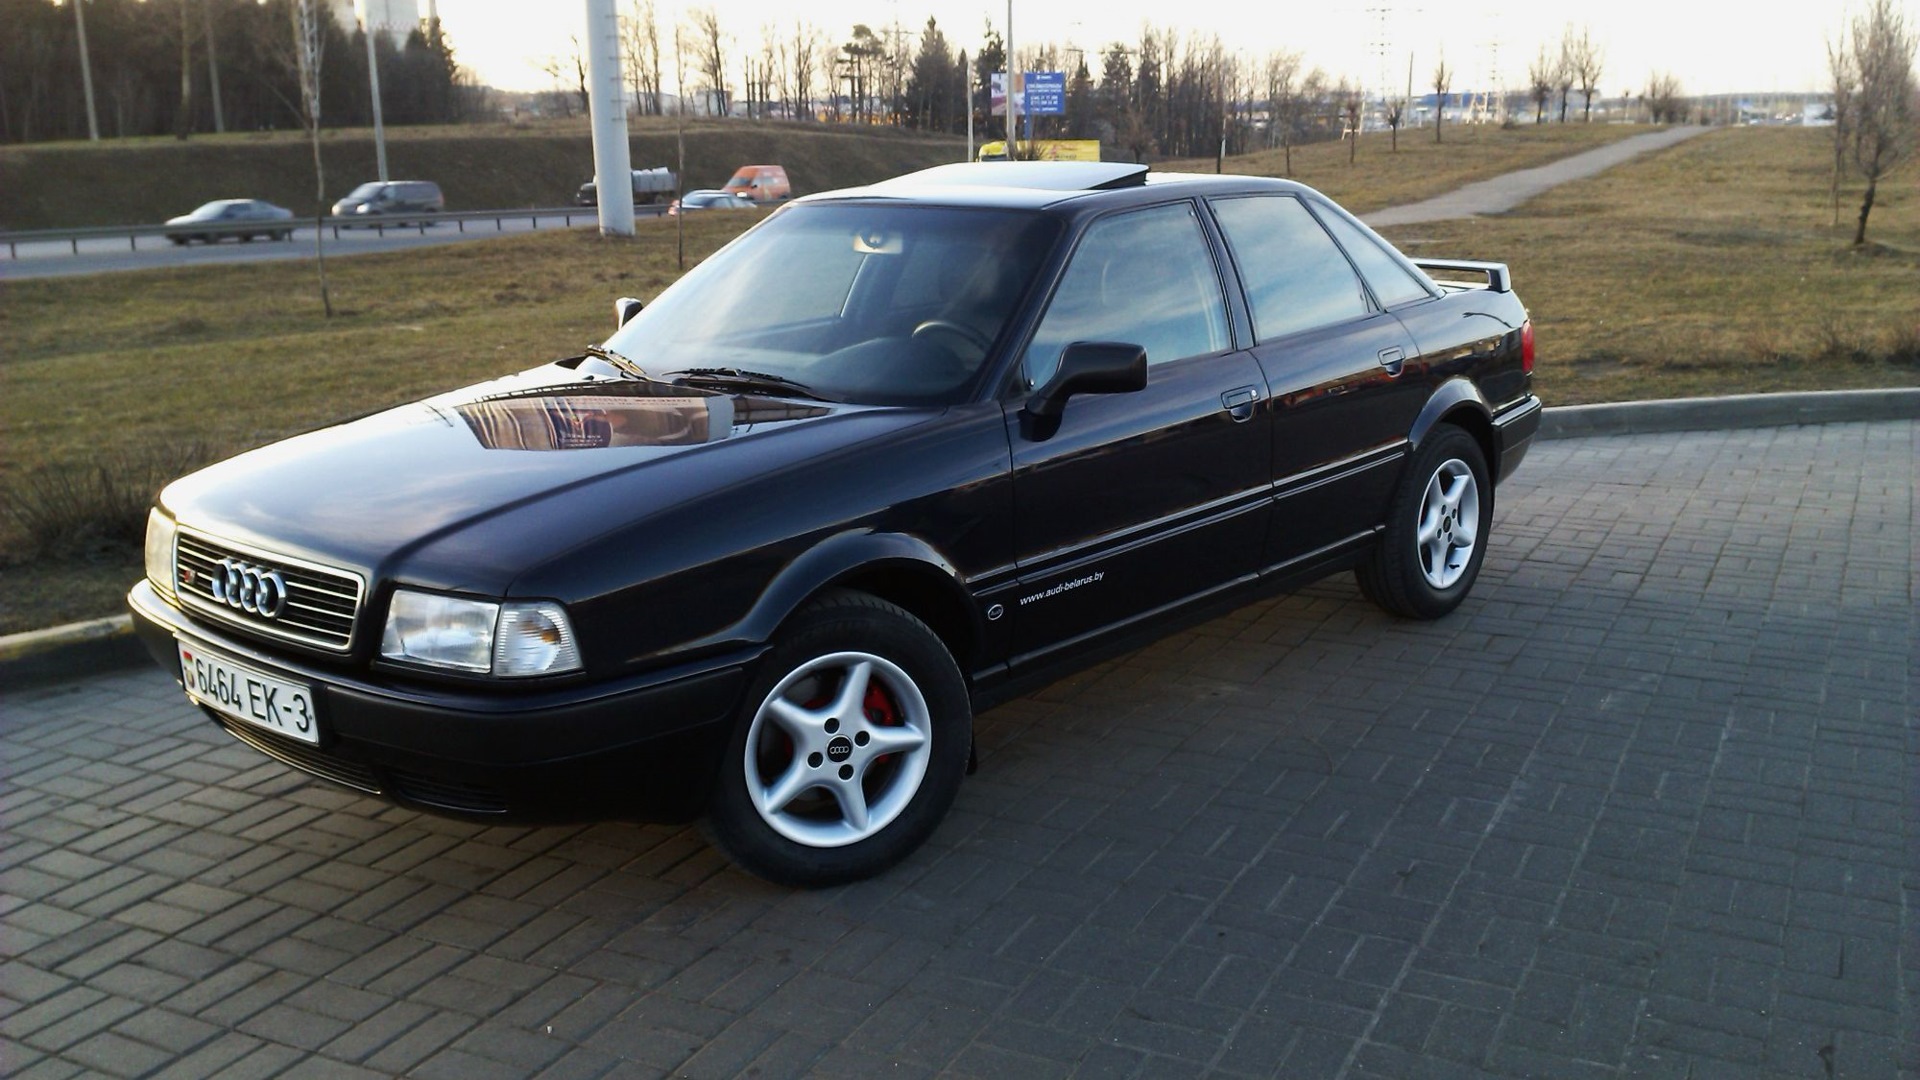 Купить ауди 80 б4 в беларуси. Audi 80 b4 1994. Audi 80 b4 Black. Audi 80 b4 черная. Ауди 80 б4 черная.